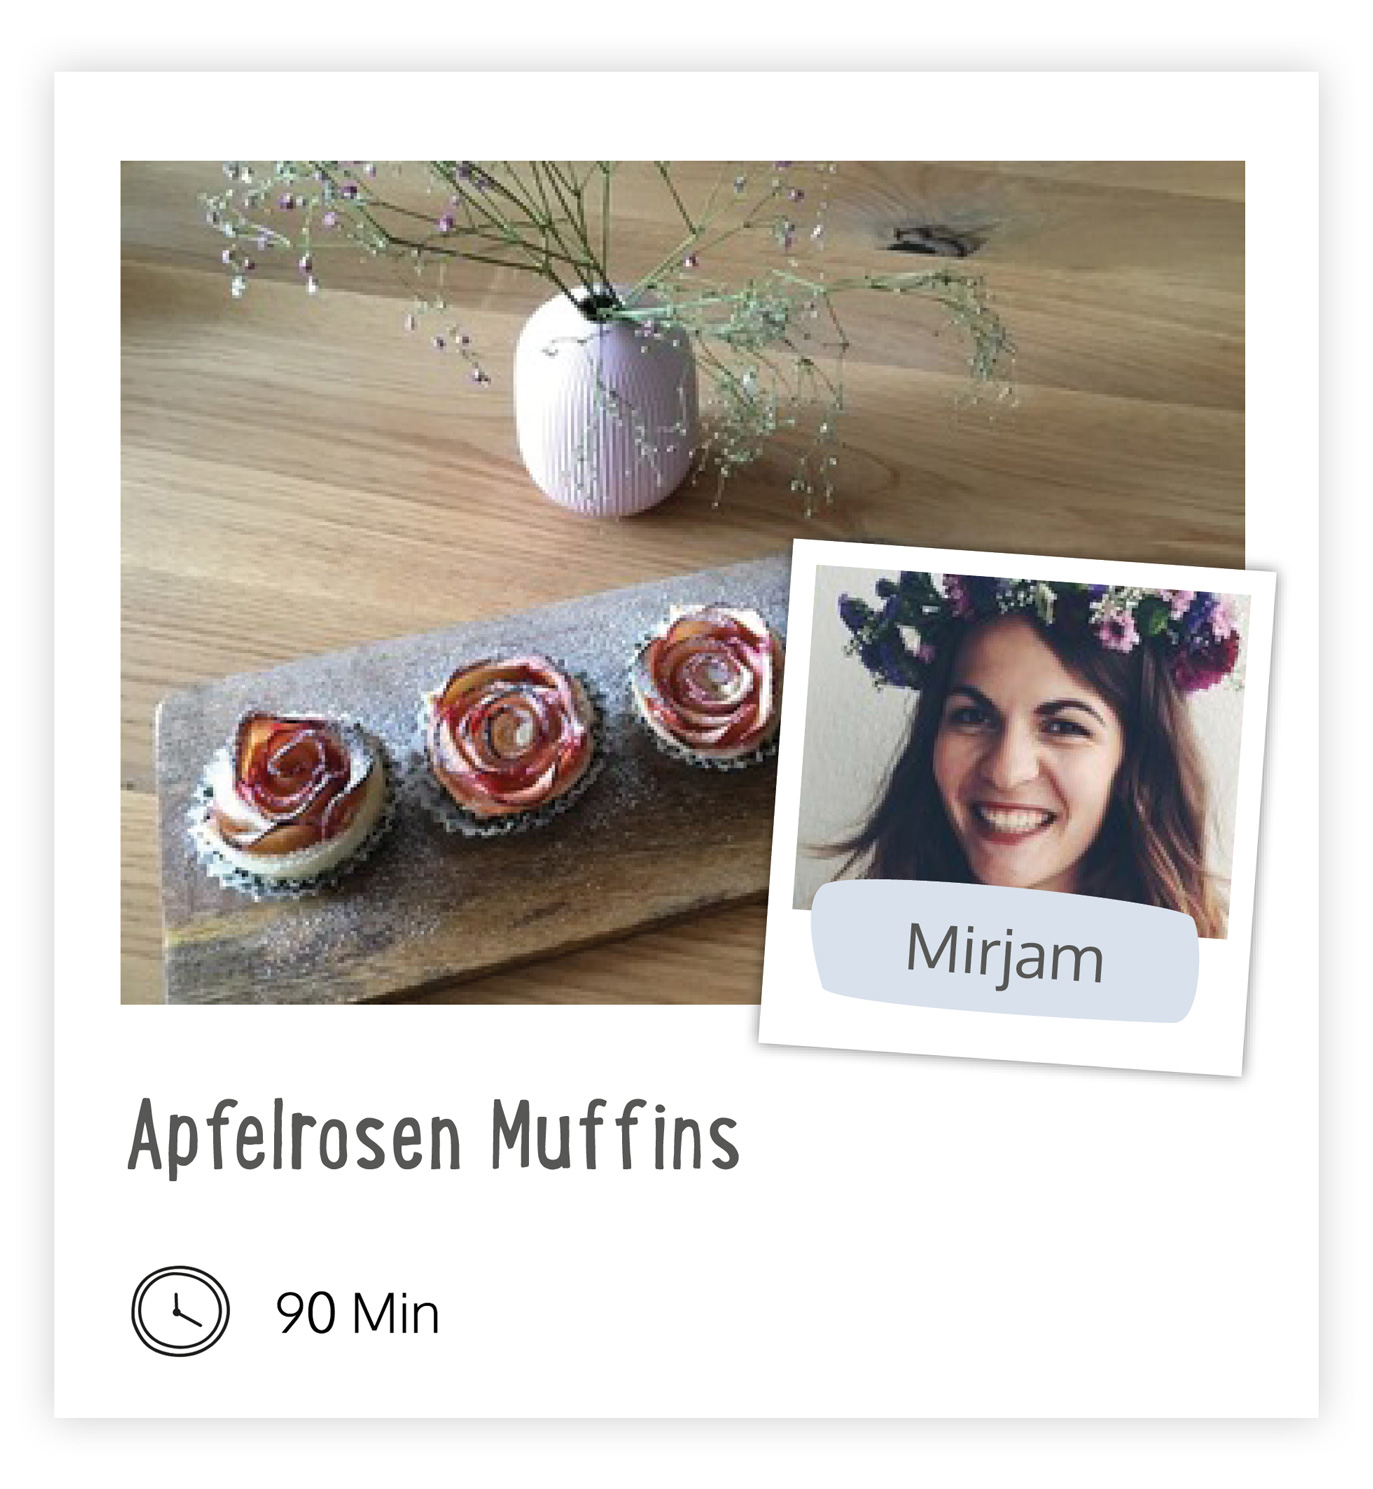 Apfelrosenmuffins von Mirjam